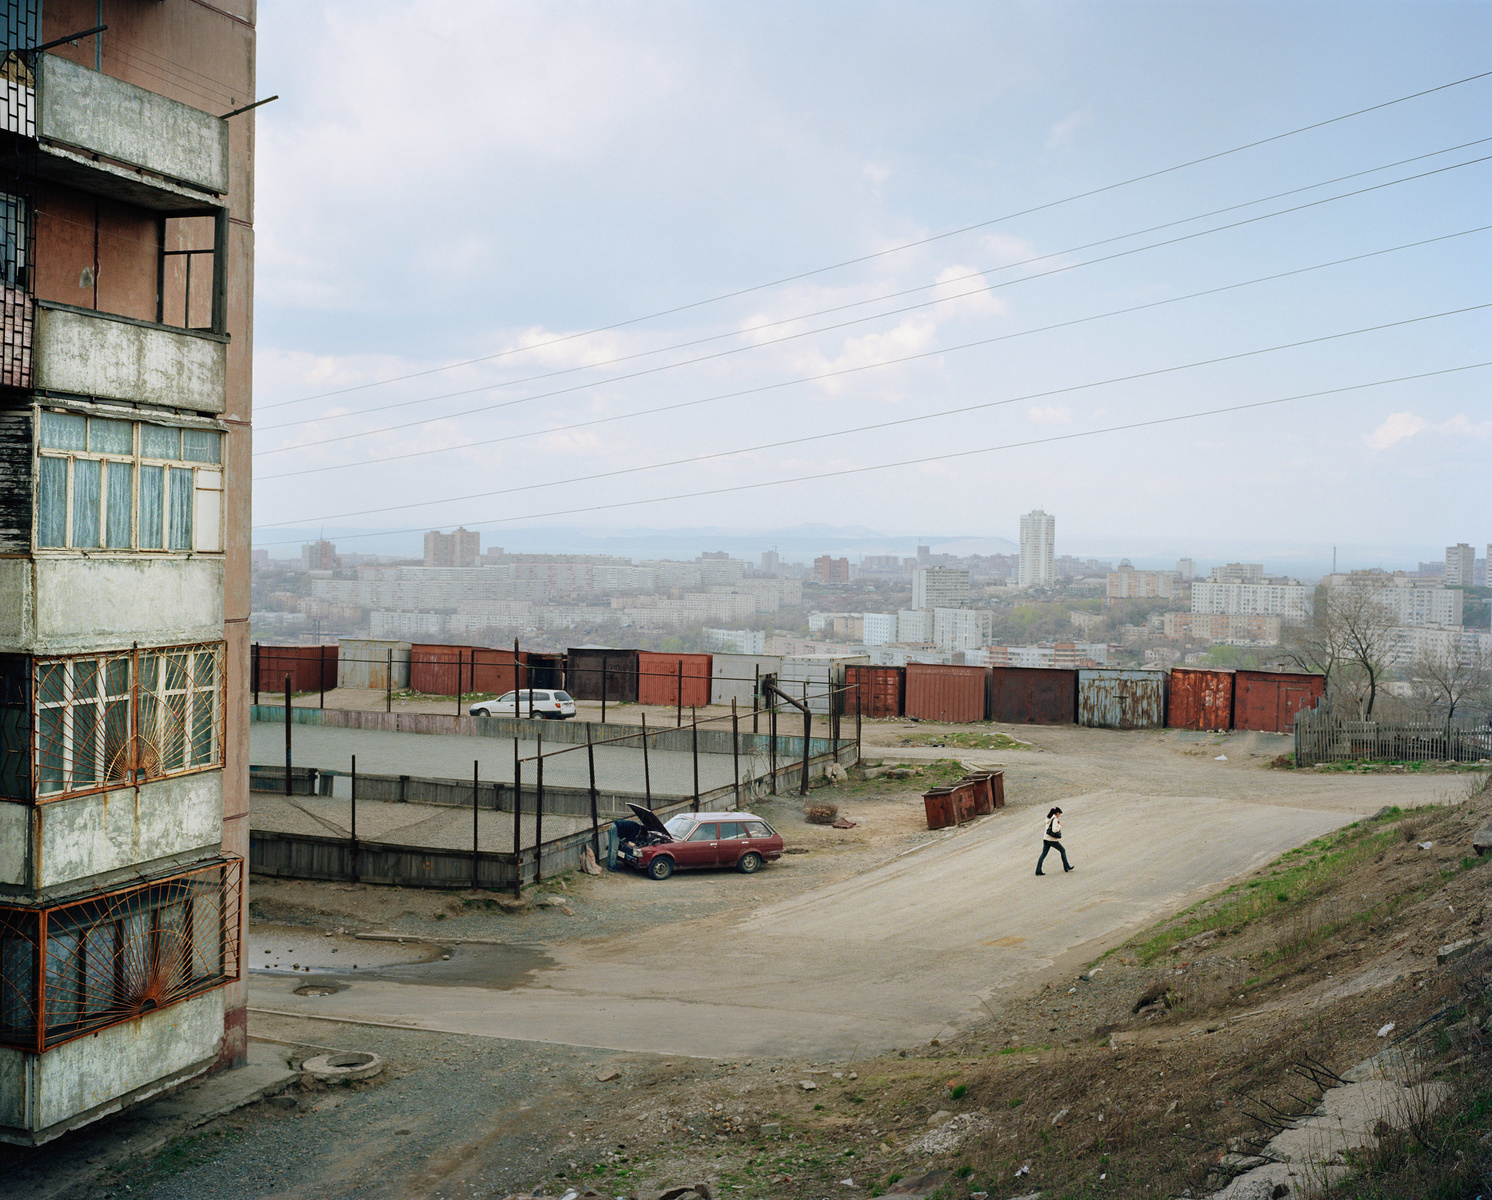 穿行在俄罗斯最偏远地区 寻罕无人至的社会生存